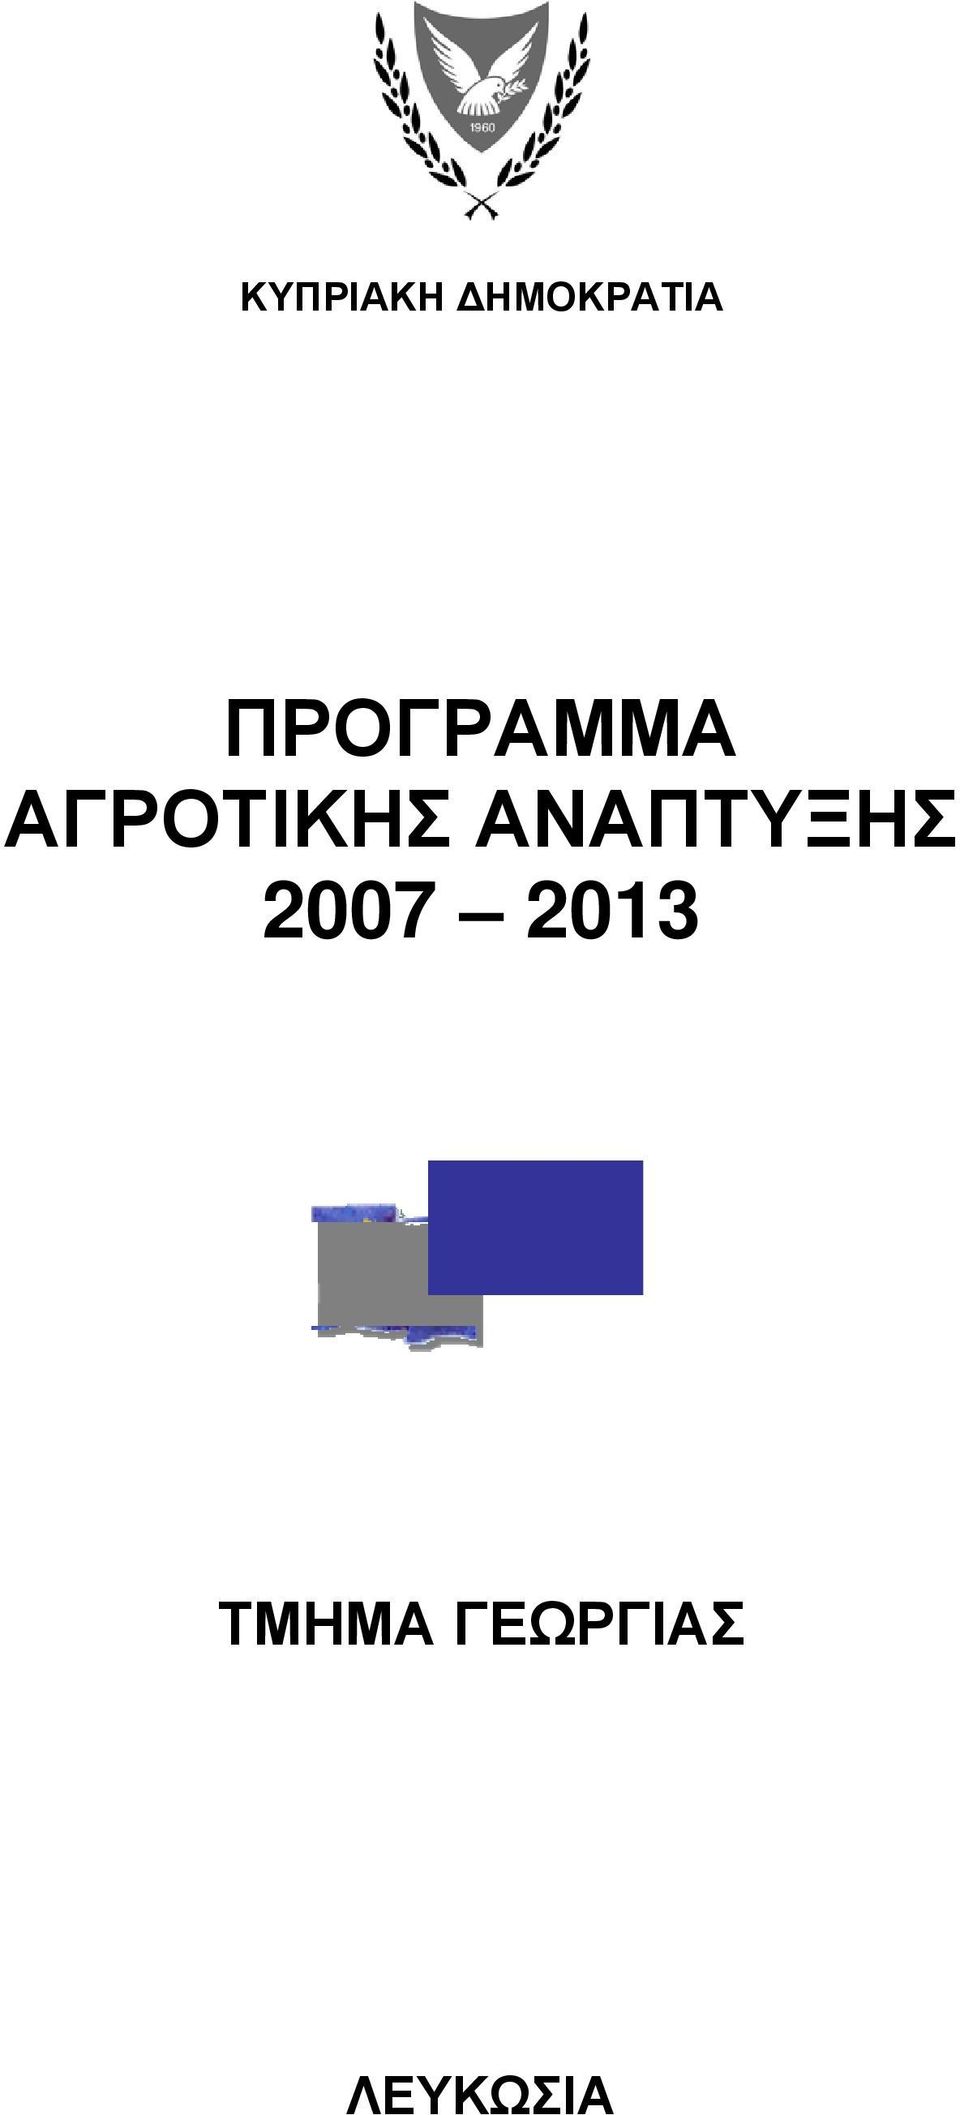 ΑΝΑΠΤΥΞΗΣ 2007 2013